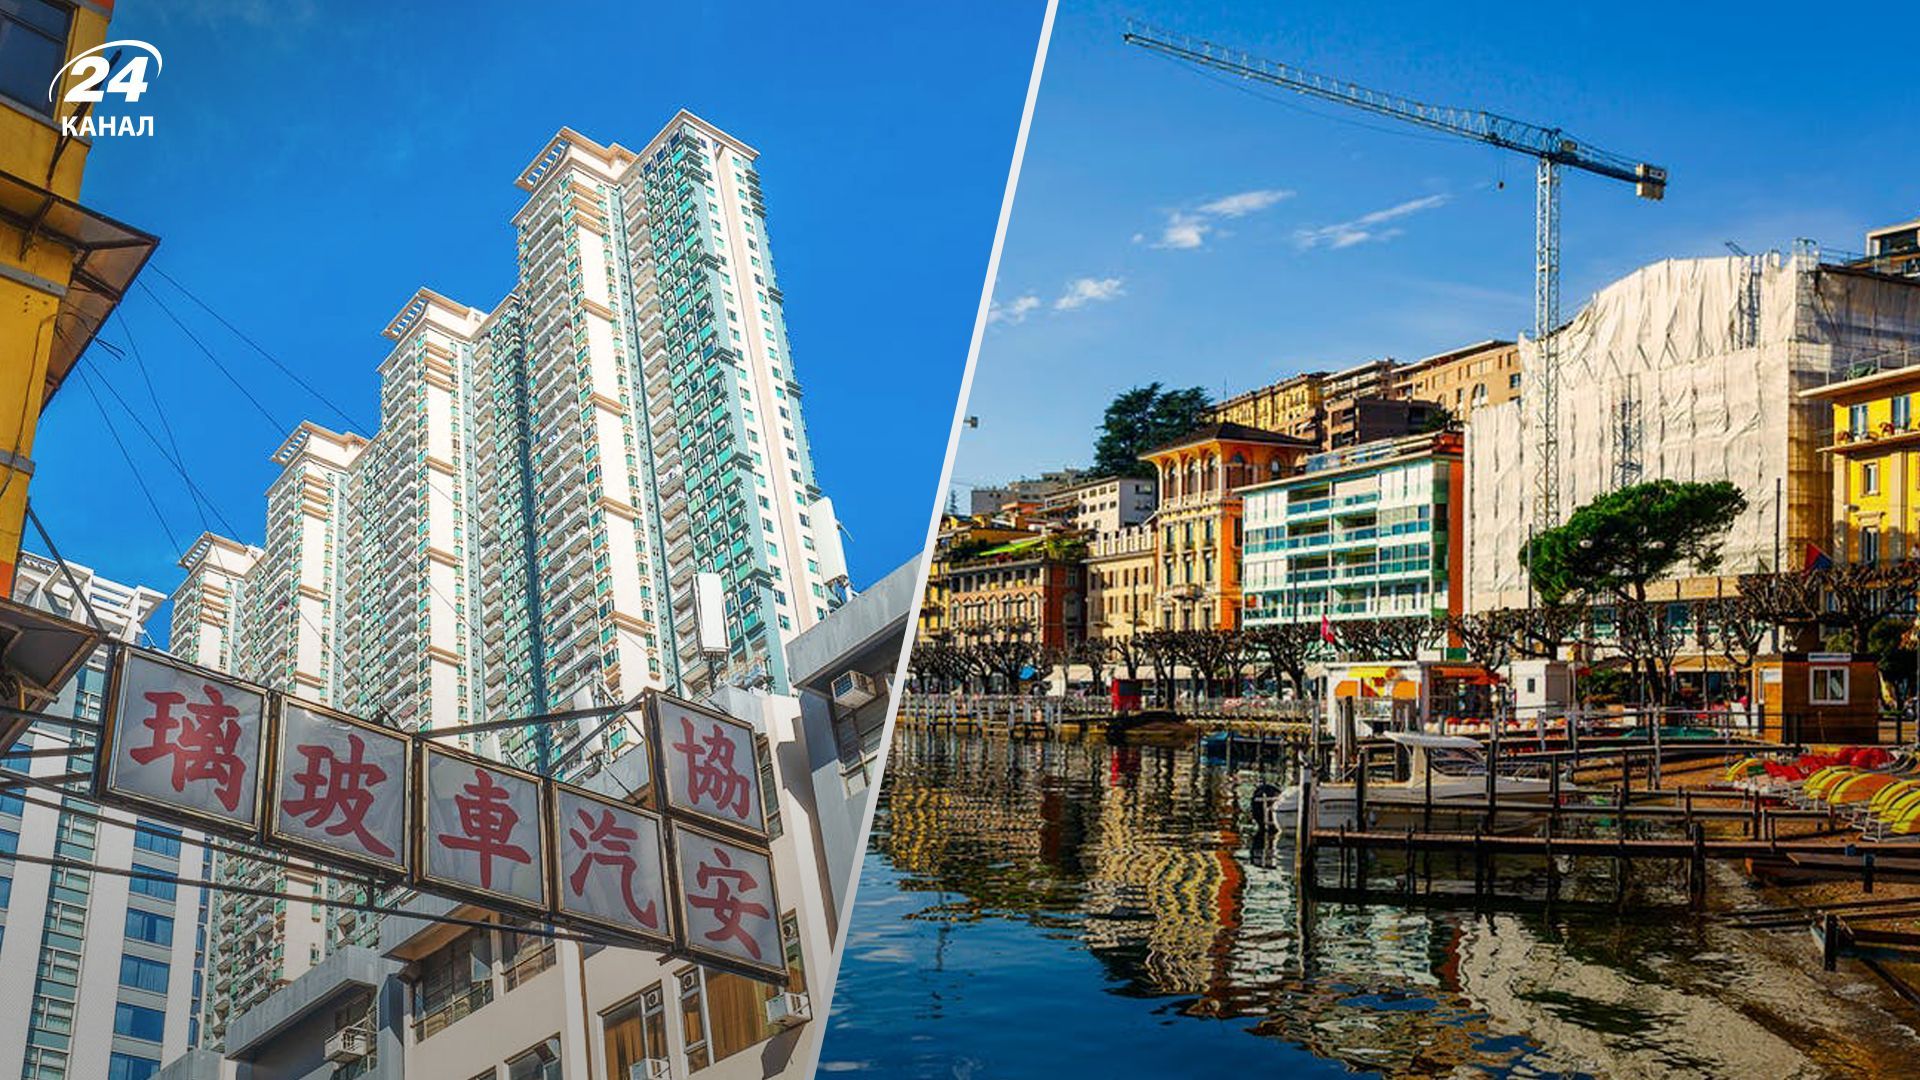 Аналитики назвали самые дорогие города мира для иностранцев - Недвижимость